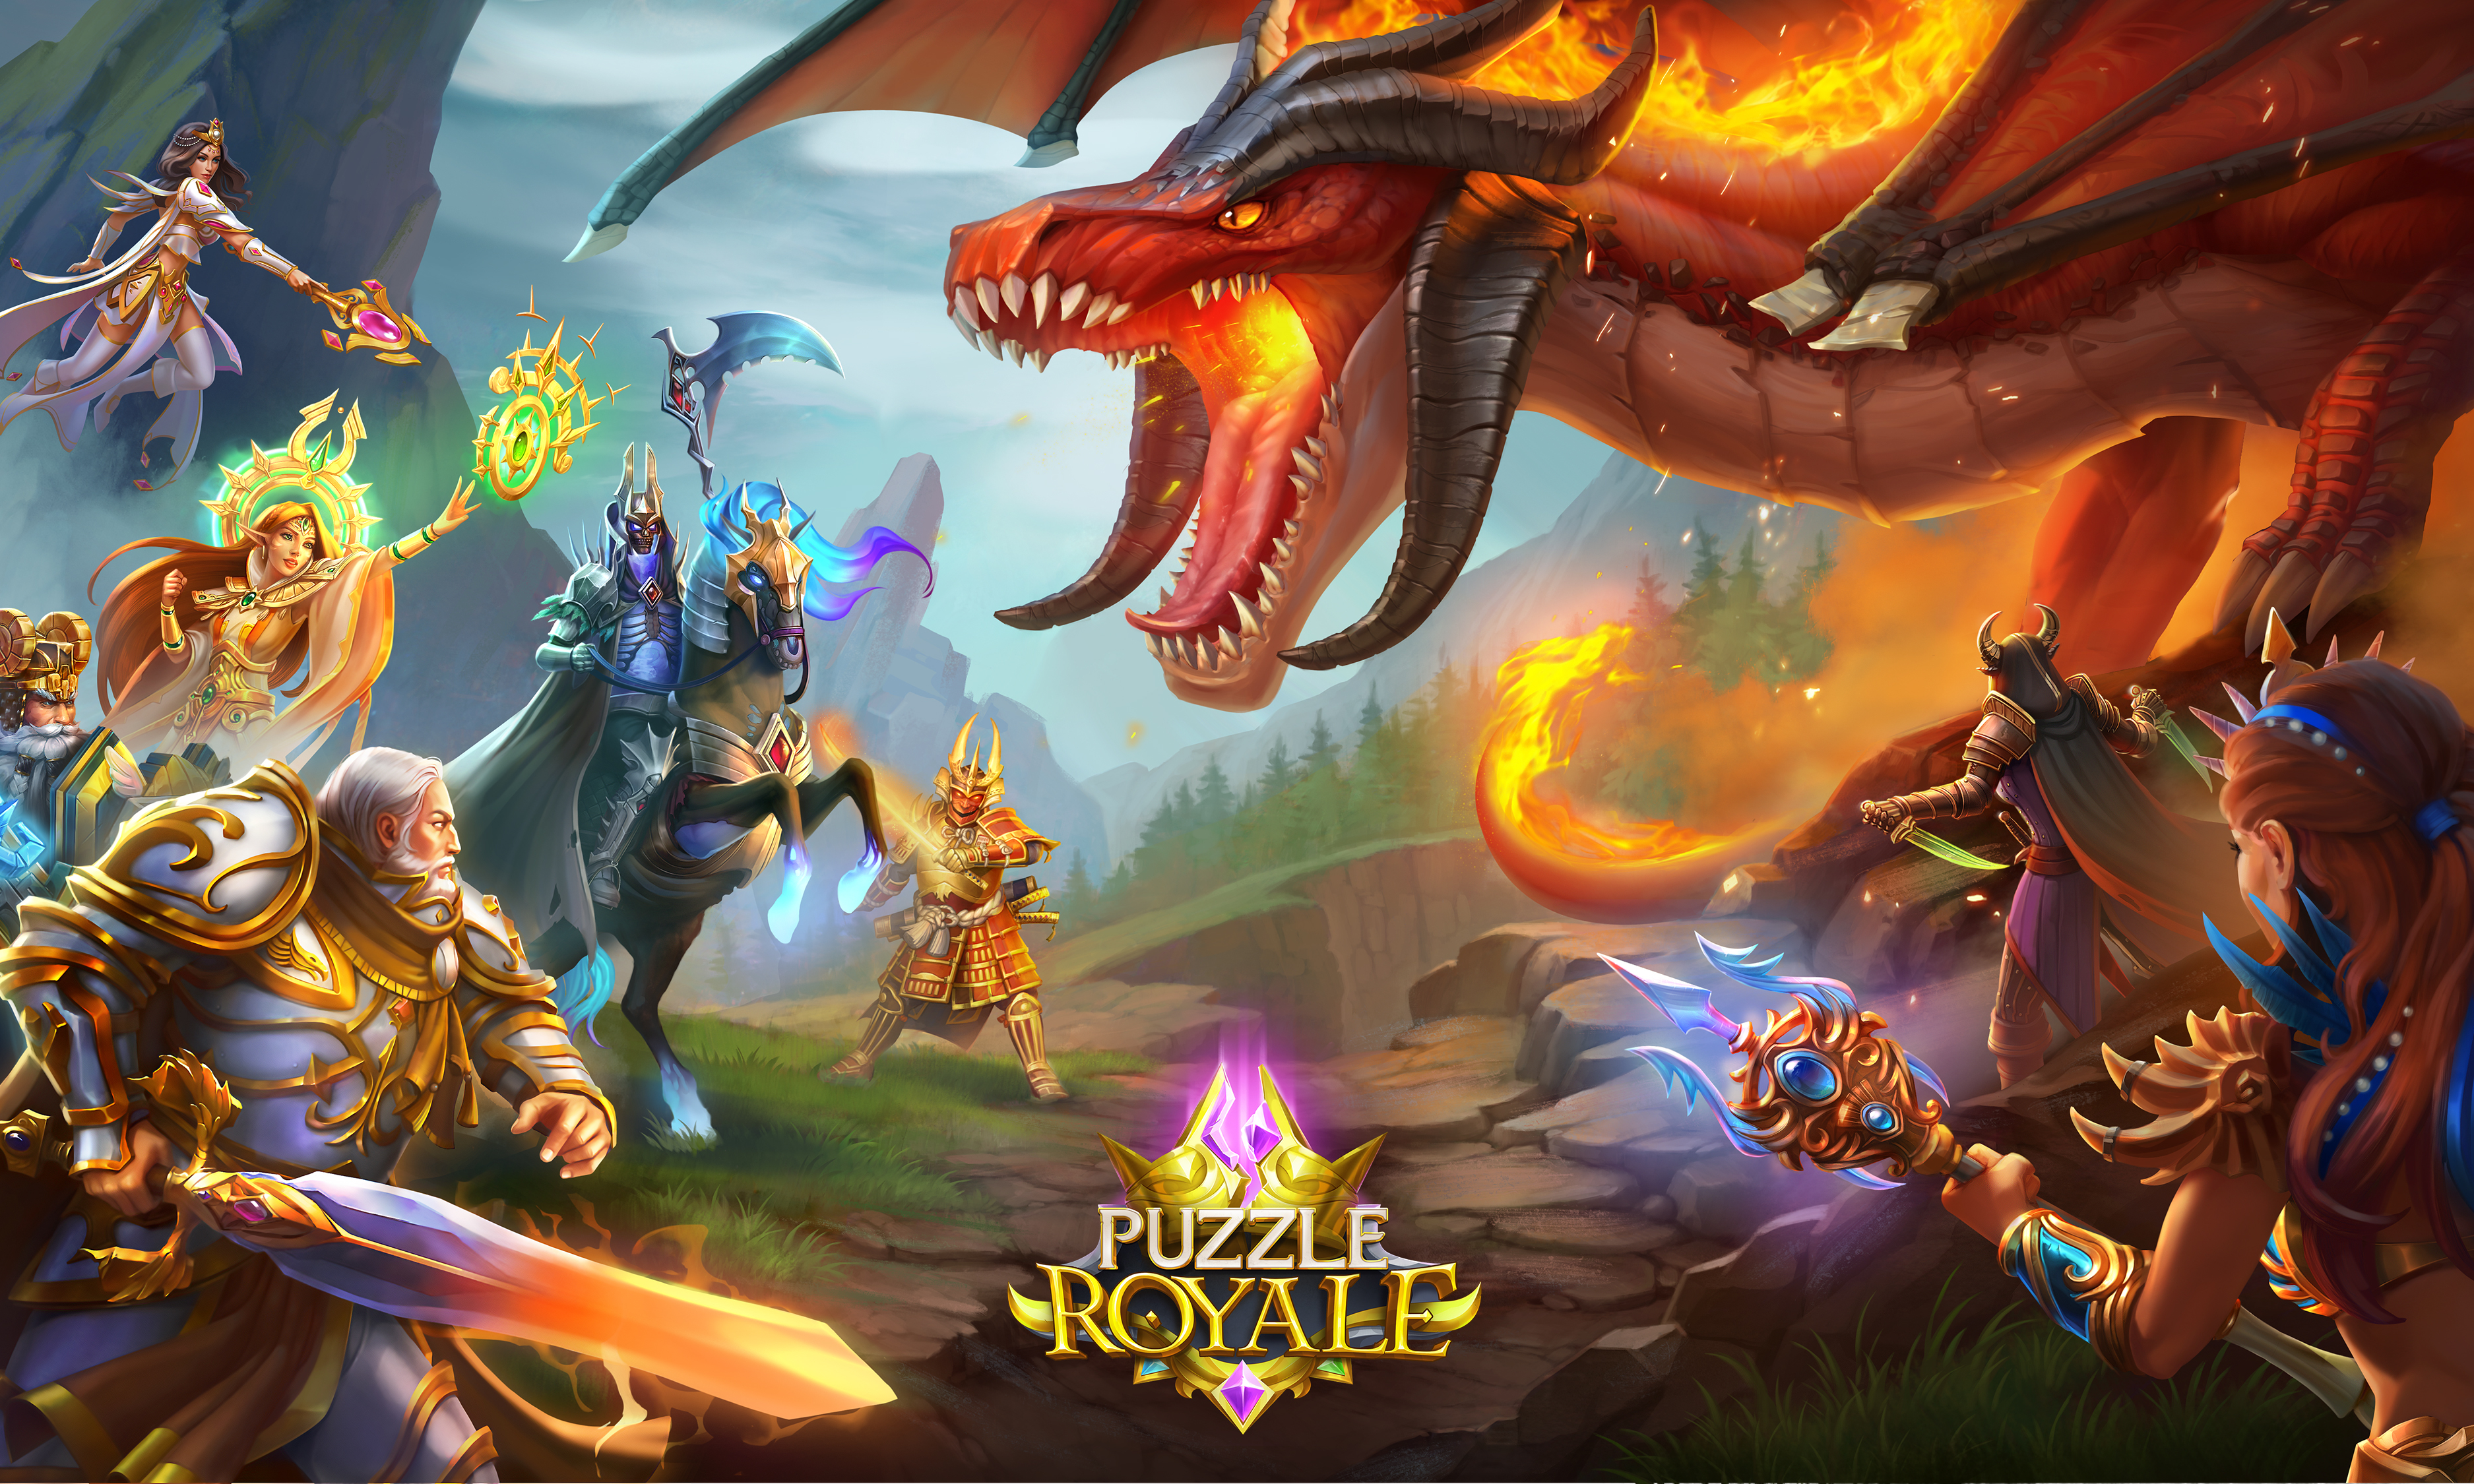 background image of Puzzle royale